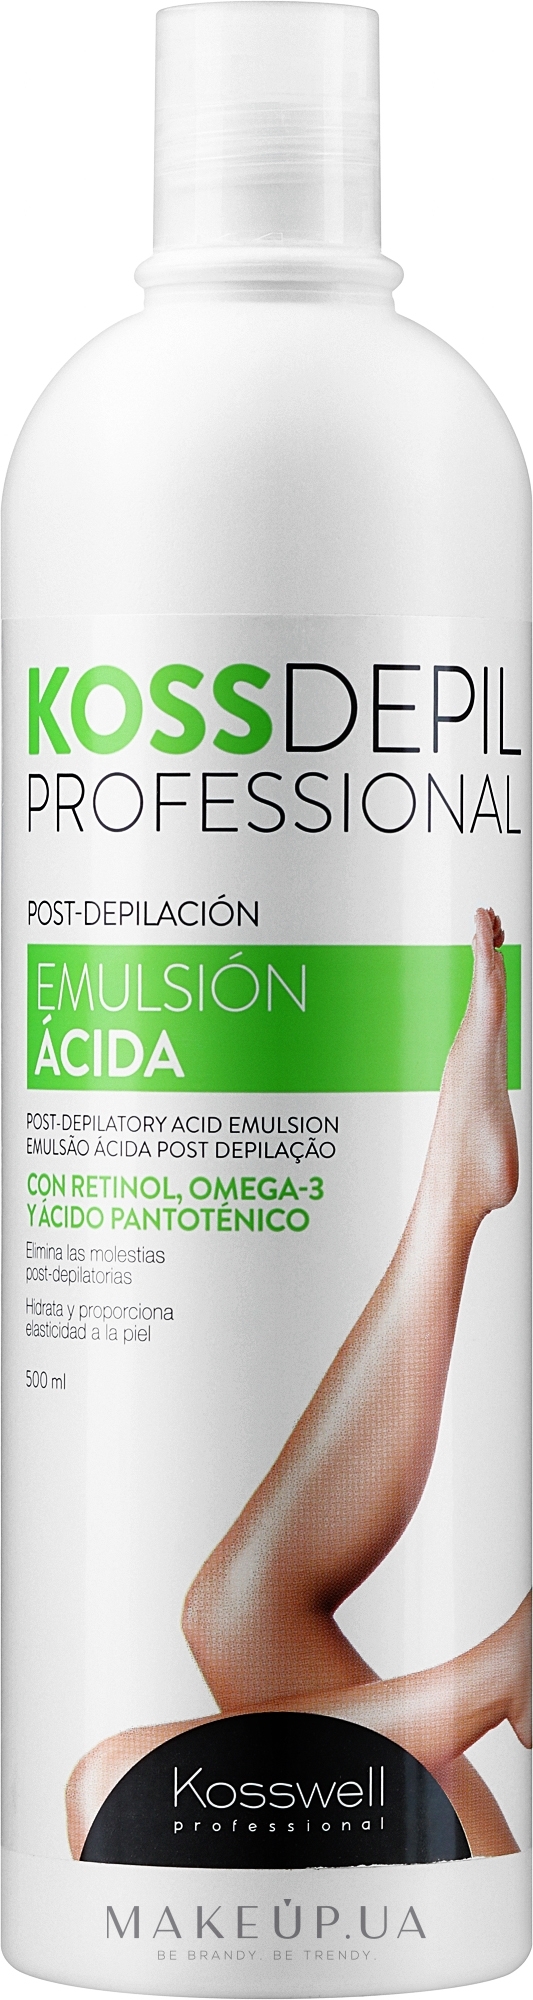 Эмульсия для тела после эпиляции - Kosswell Professional Kossdepil Emulsion Acida — фото 500ml